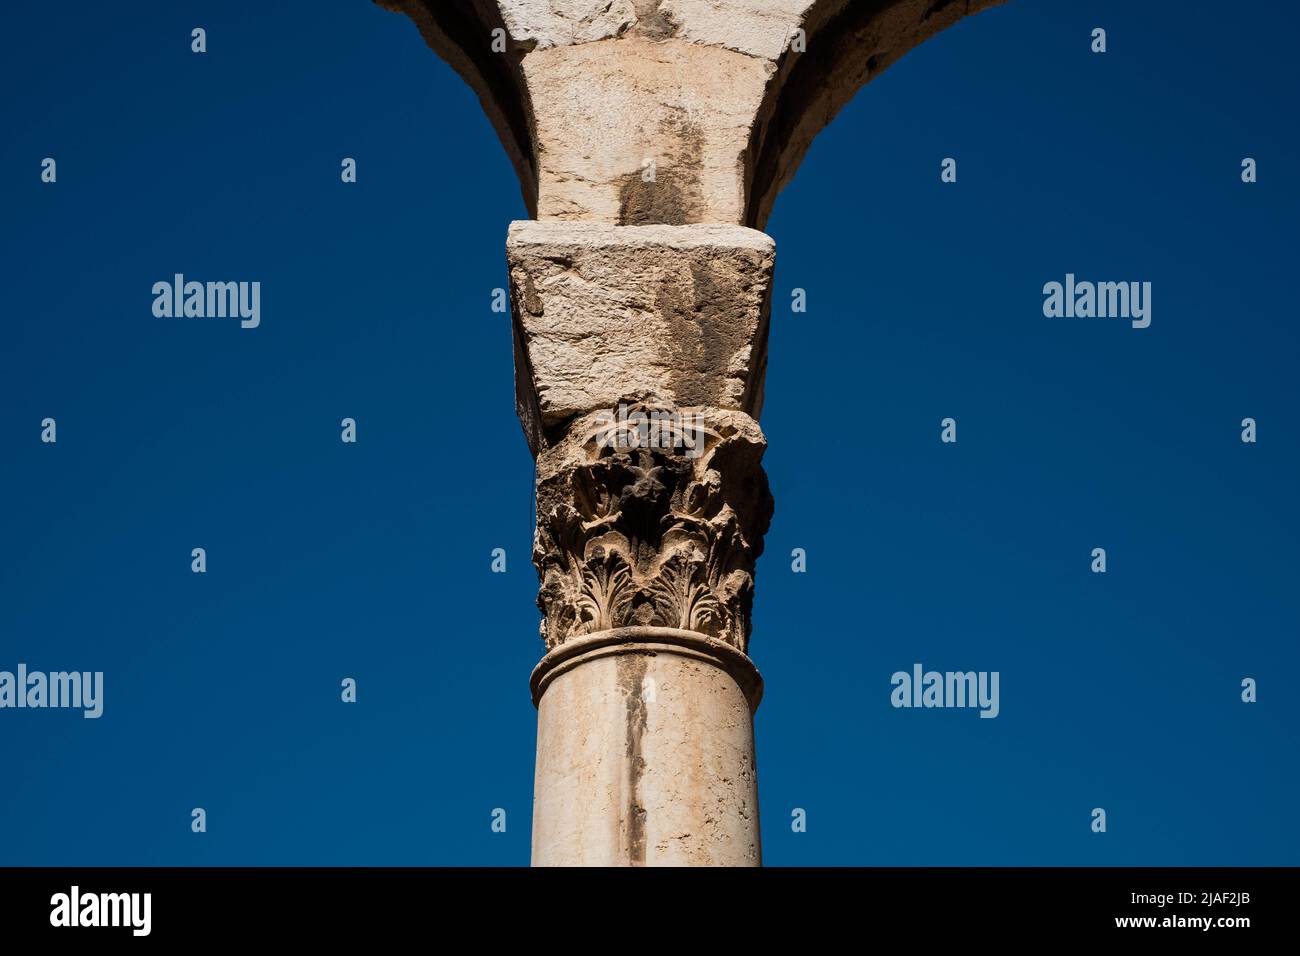 primo piano della colonna, dettaglio dell'architettura storica Foto Stock